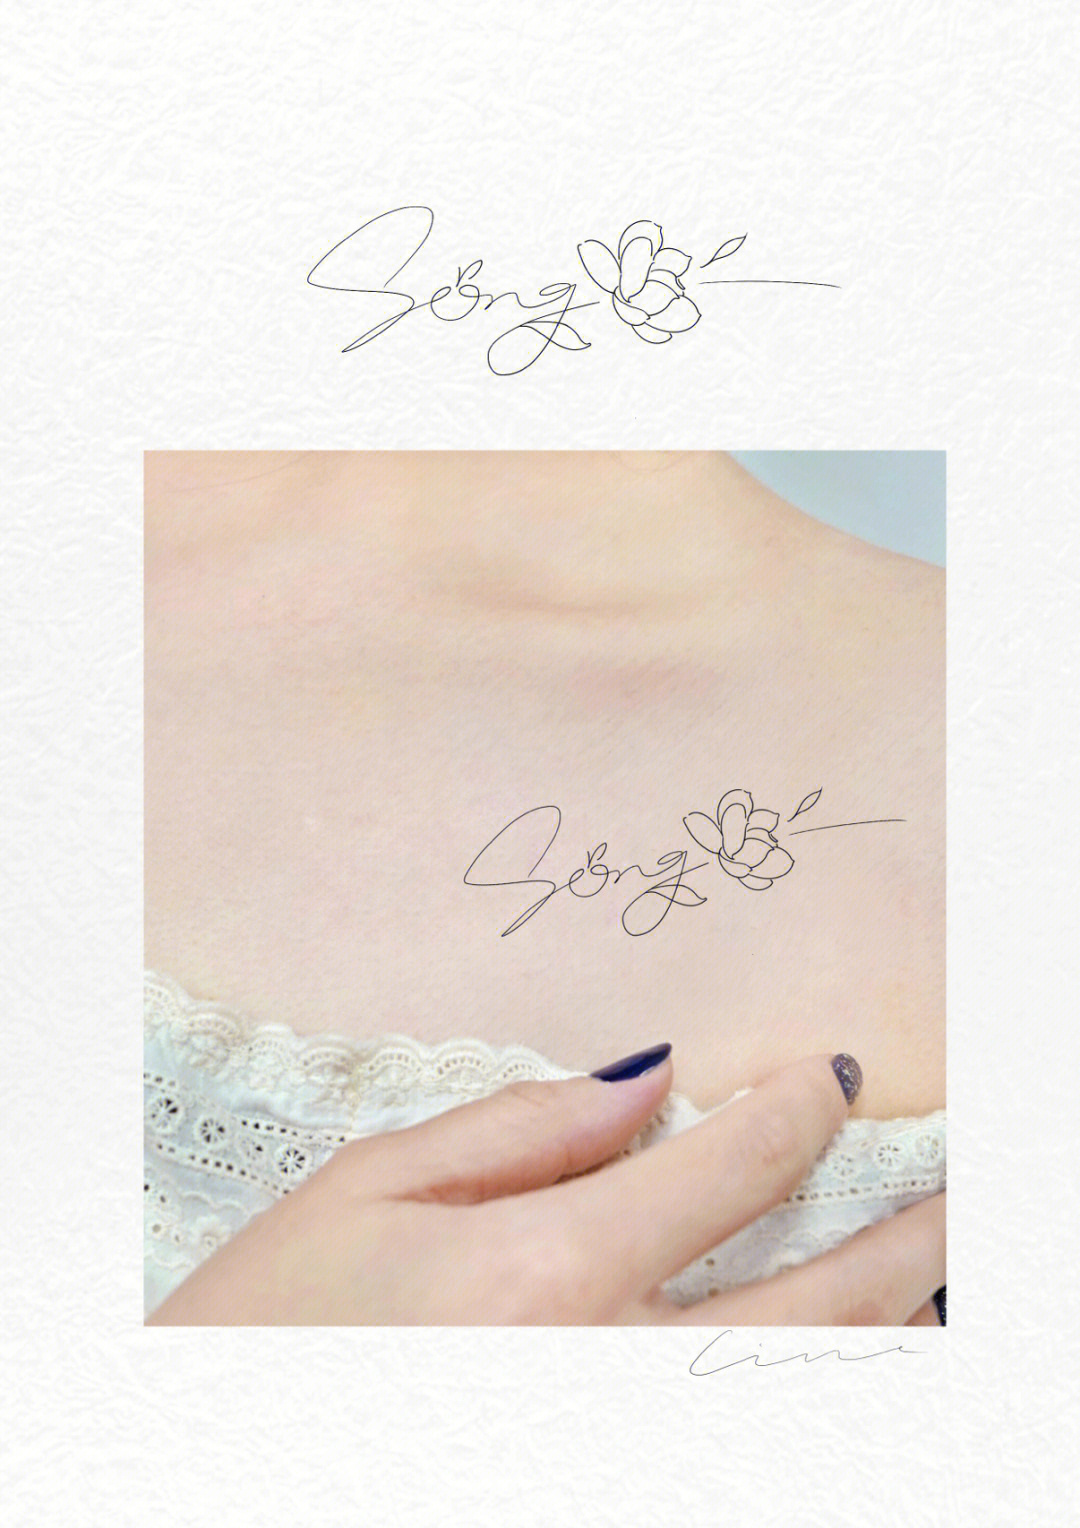 茉莉花纹身手稿图片